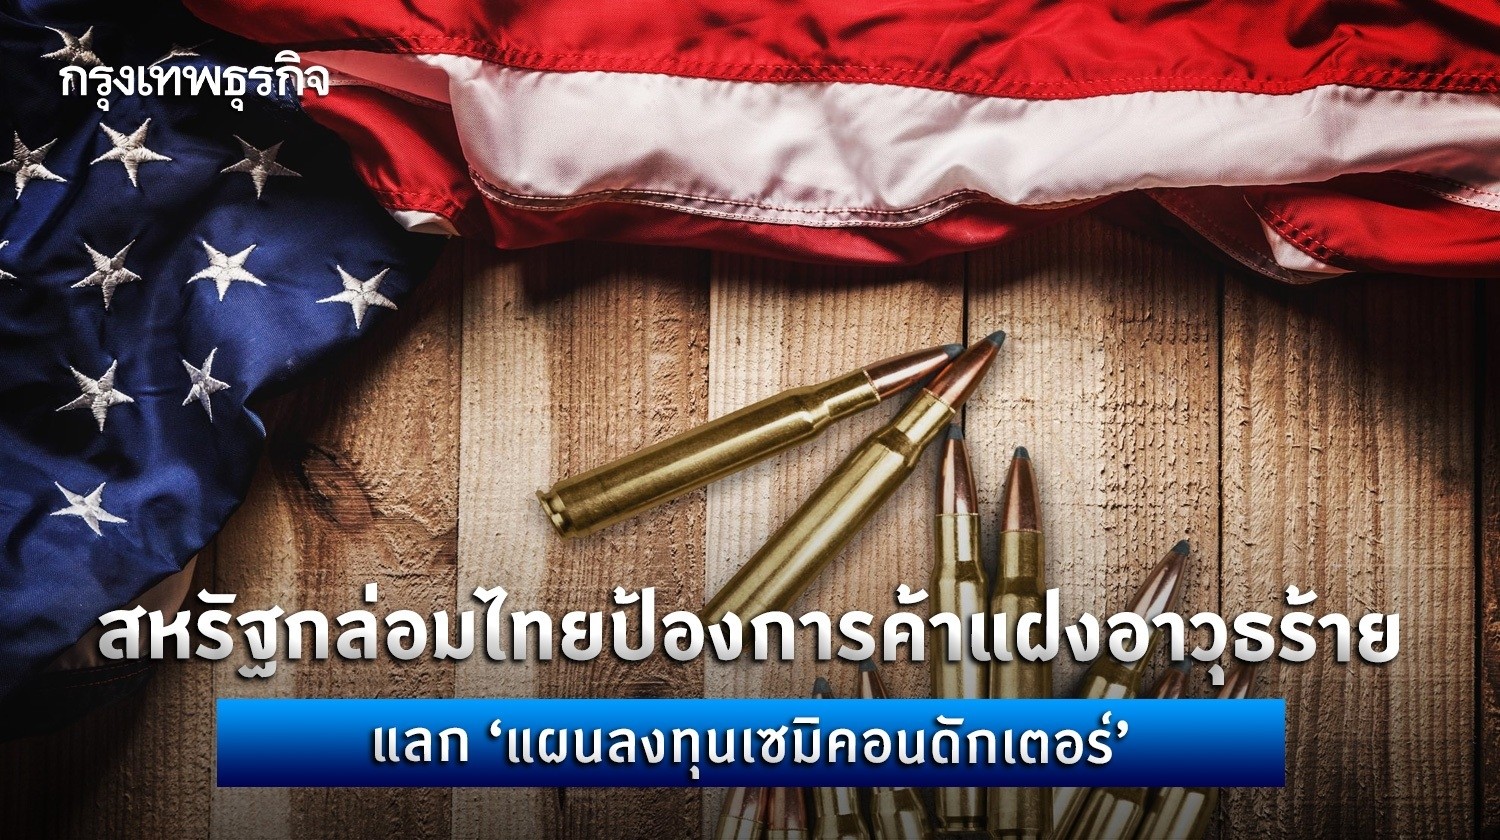 สหรัฐกล่อมไทยป้องการค้าแฝงอาวุธร้ายแลก “แผนลงทุนเซมิคอนดักเตอร์”